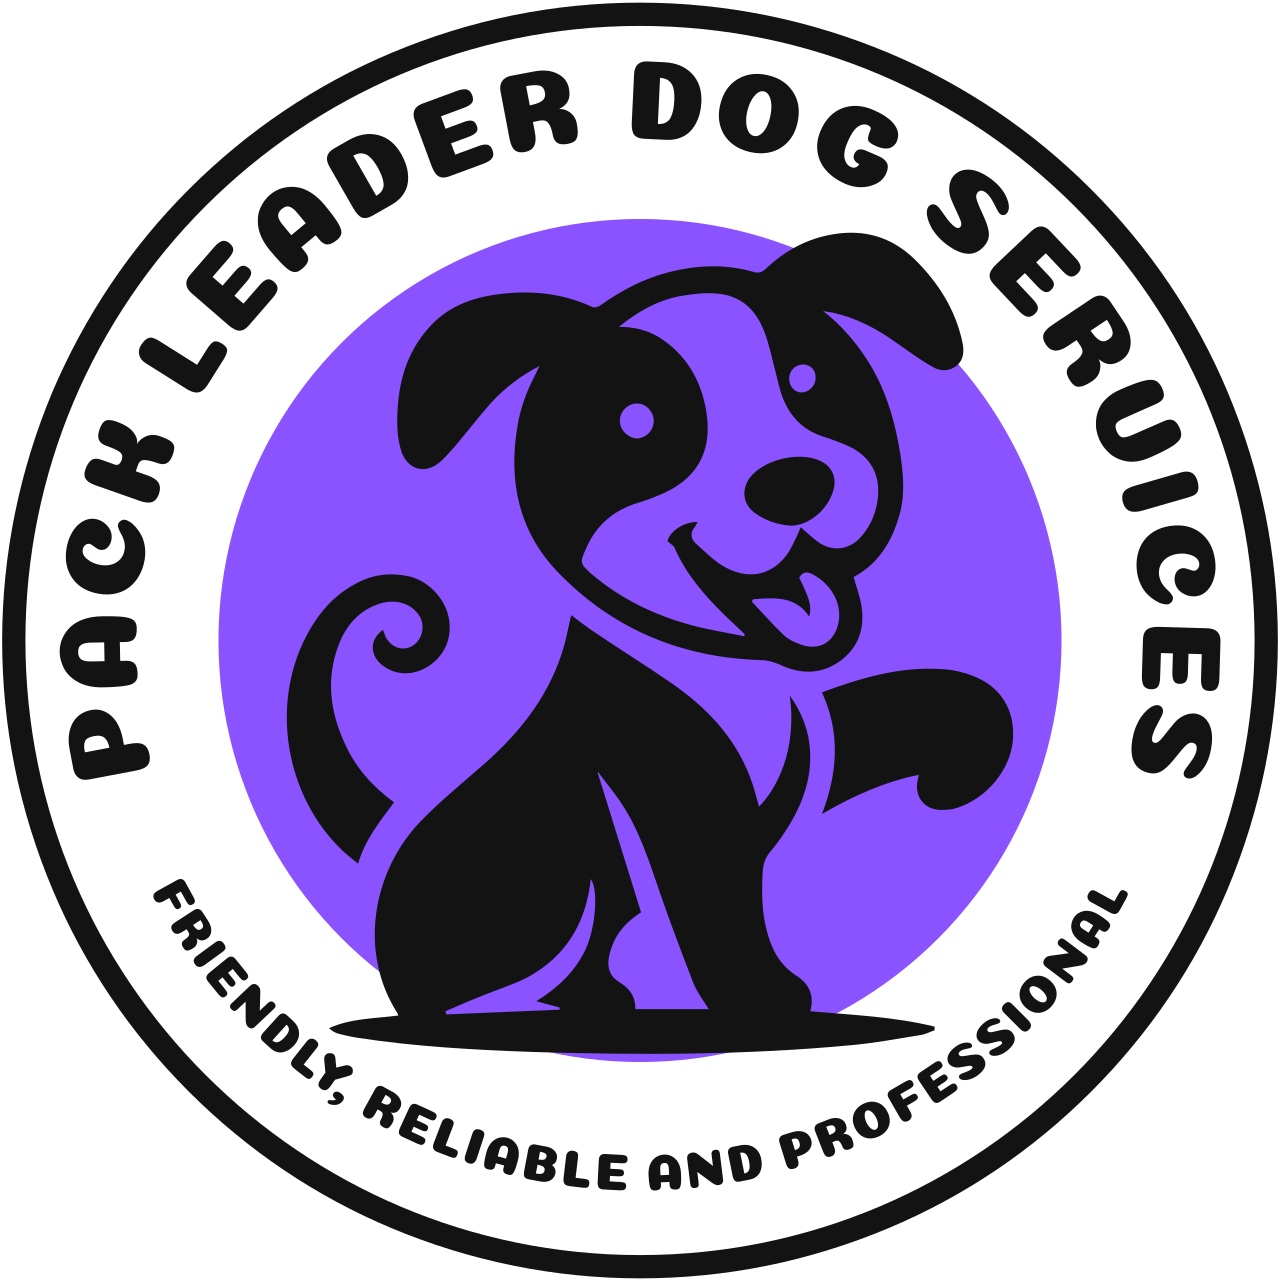 PACK LEADER DOG SERVICES's logo